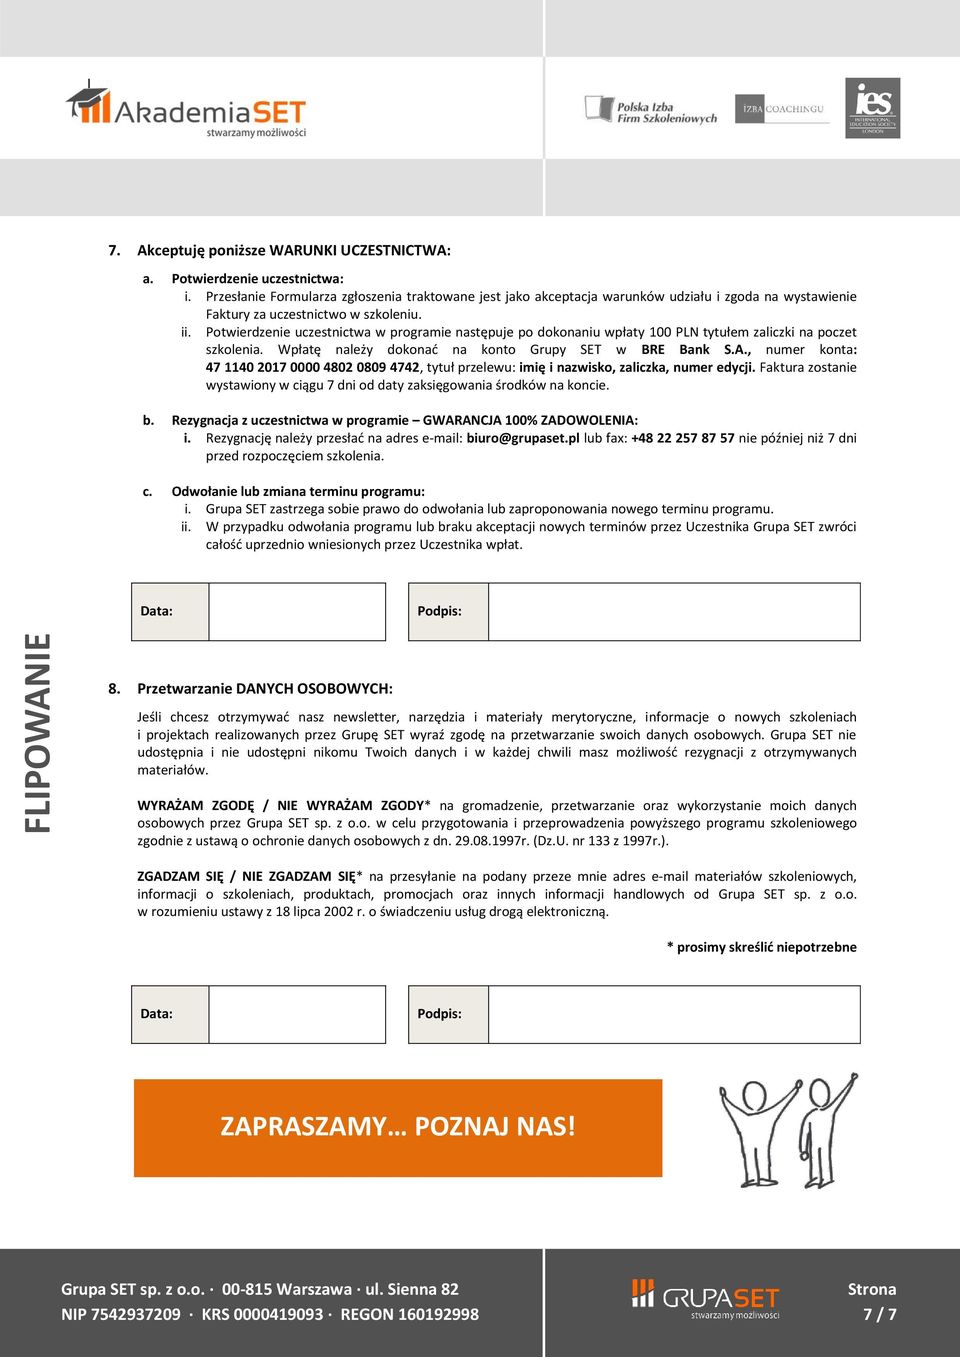 Potwierdzenie uczestnictwa w programie następuje po dokonaniu wpłaty 100 PLN tytułem zaliczki na poczet szkolenia. Wpłatę należy dokonać na konto Grupy SET w BRE Bank S.A.